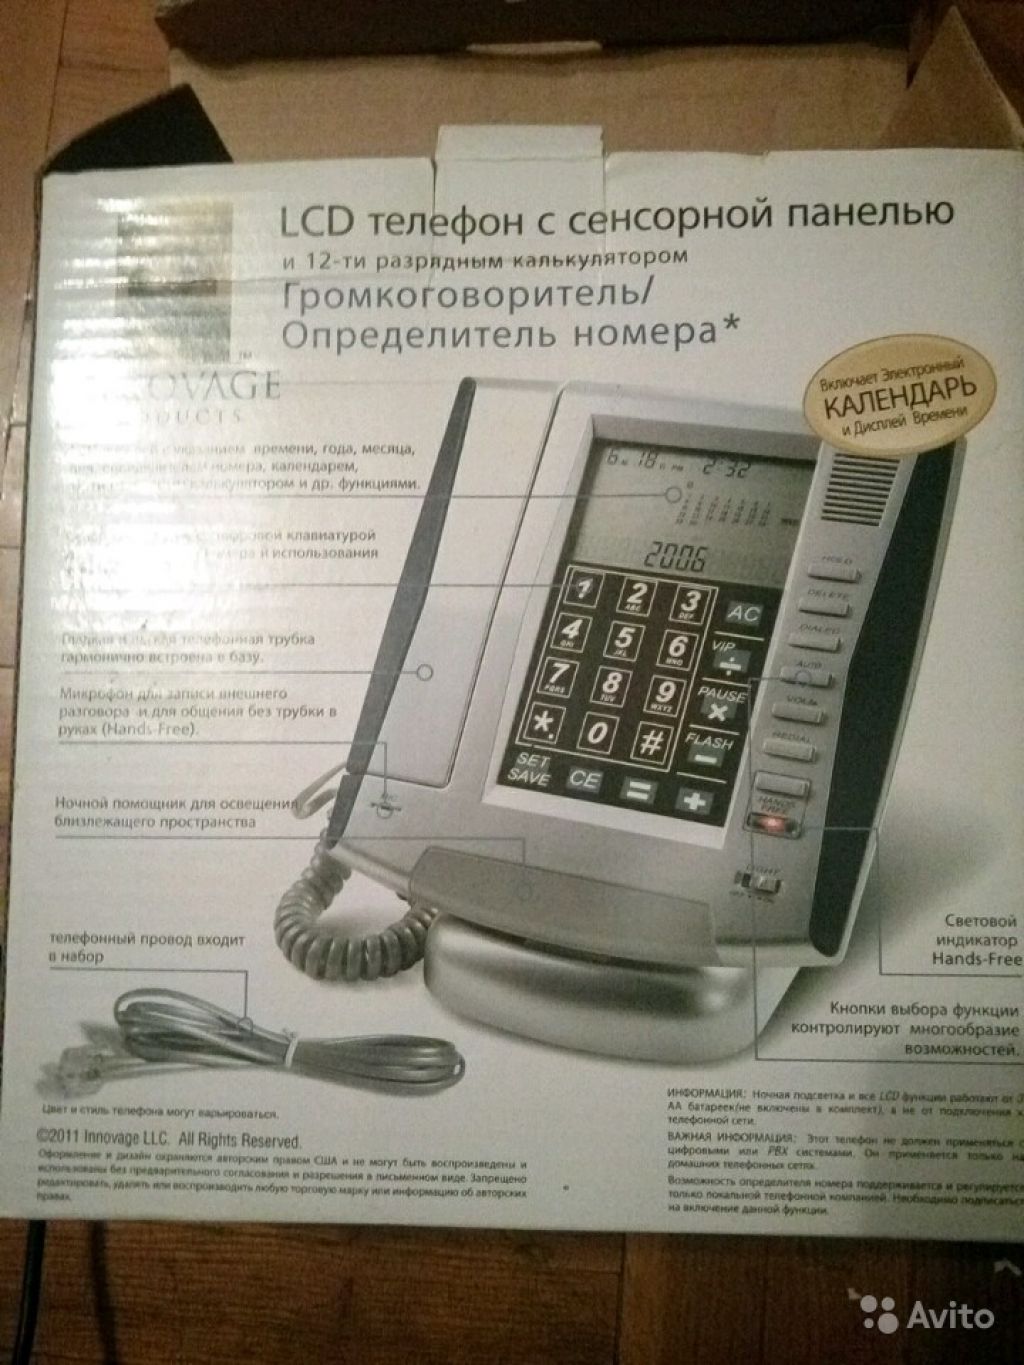 LCD телефон с сенсорной панелью в Москве. Фото 1